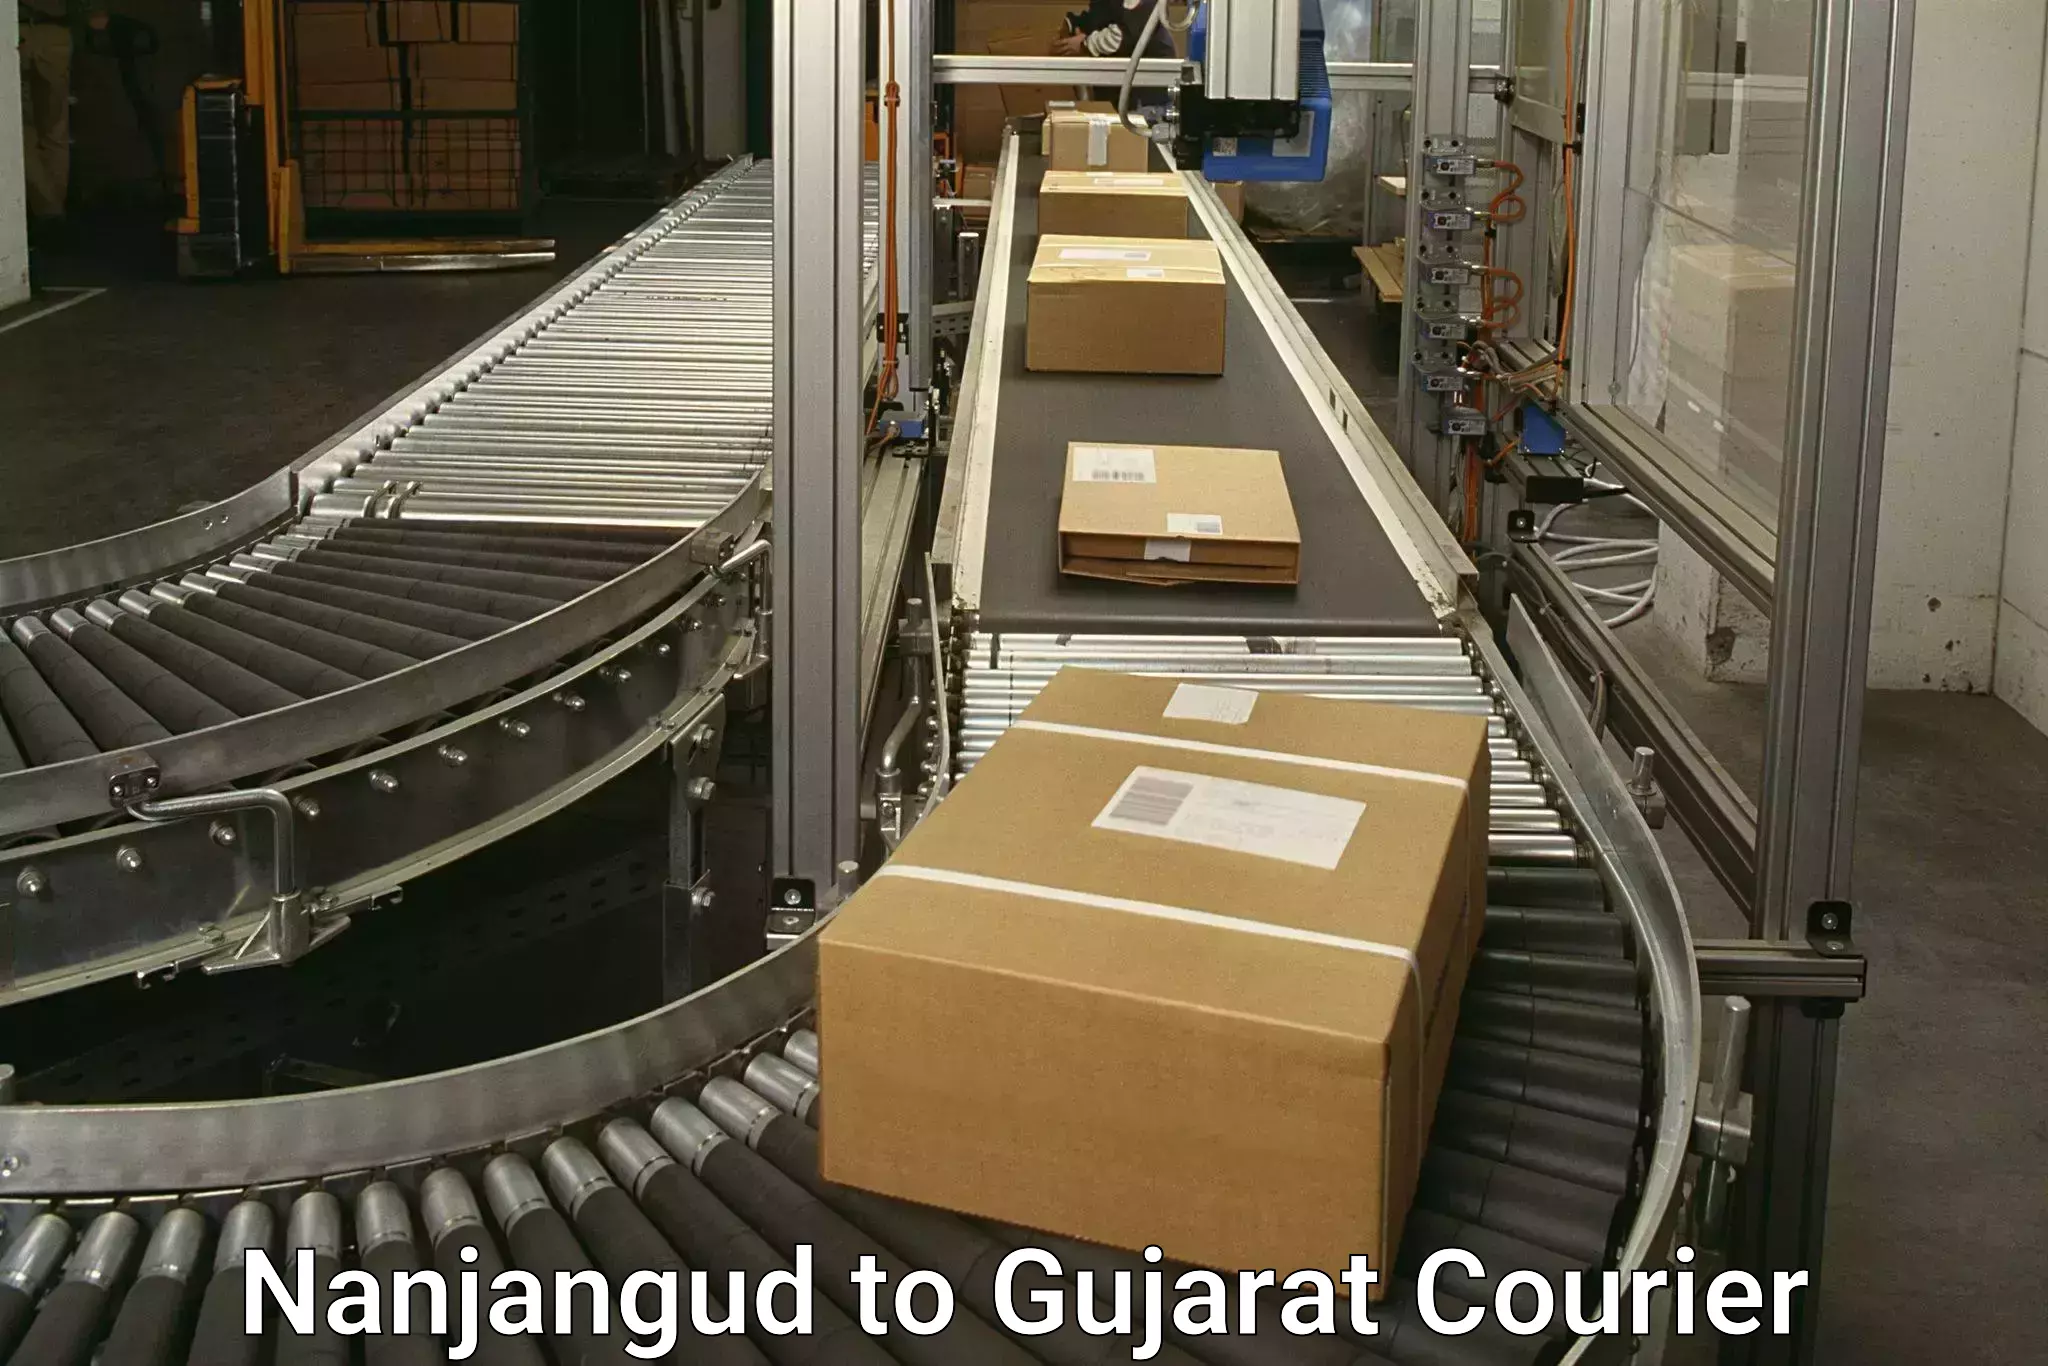 Express logistics providers Nanjangud to Gujarat